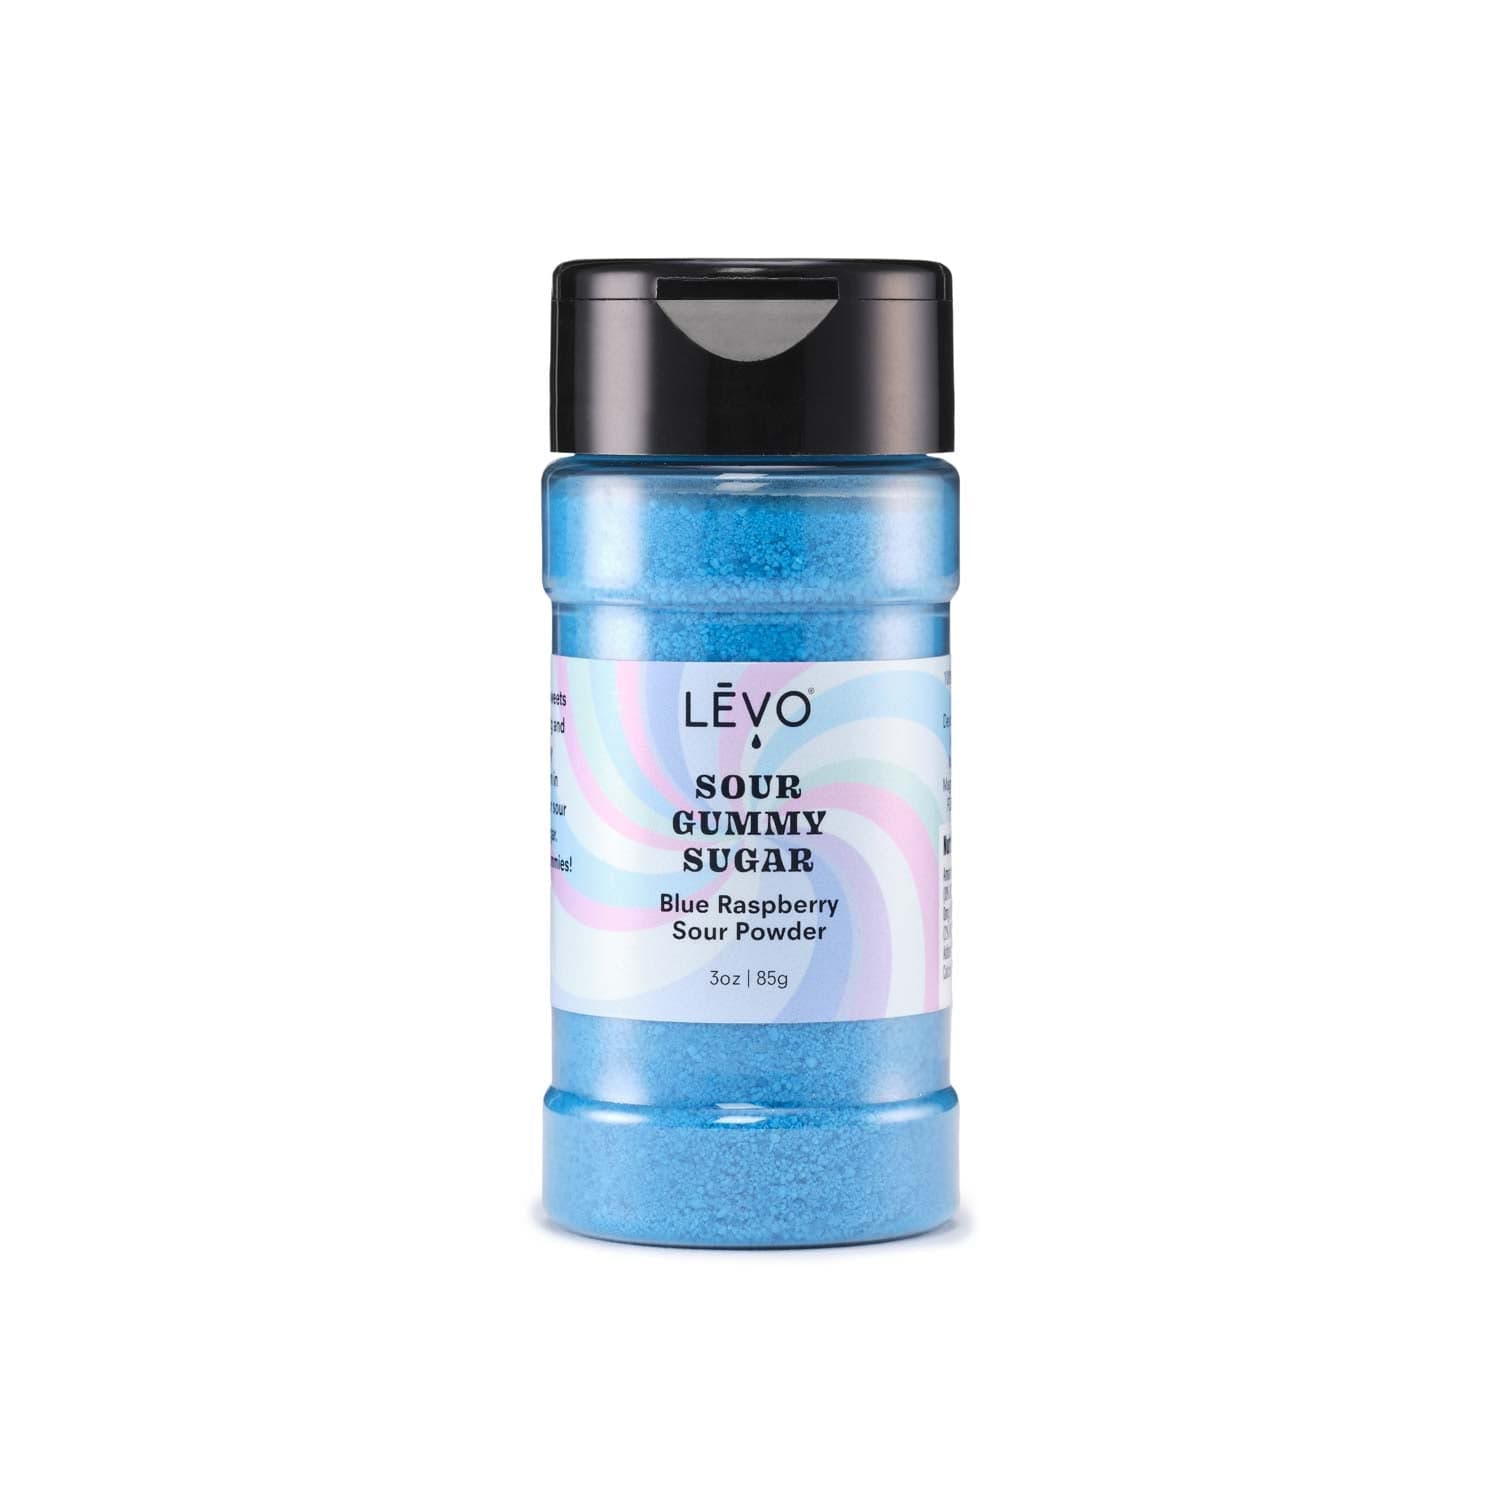 LEVO Sour gummy sugar in Blue raspberry sour powder